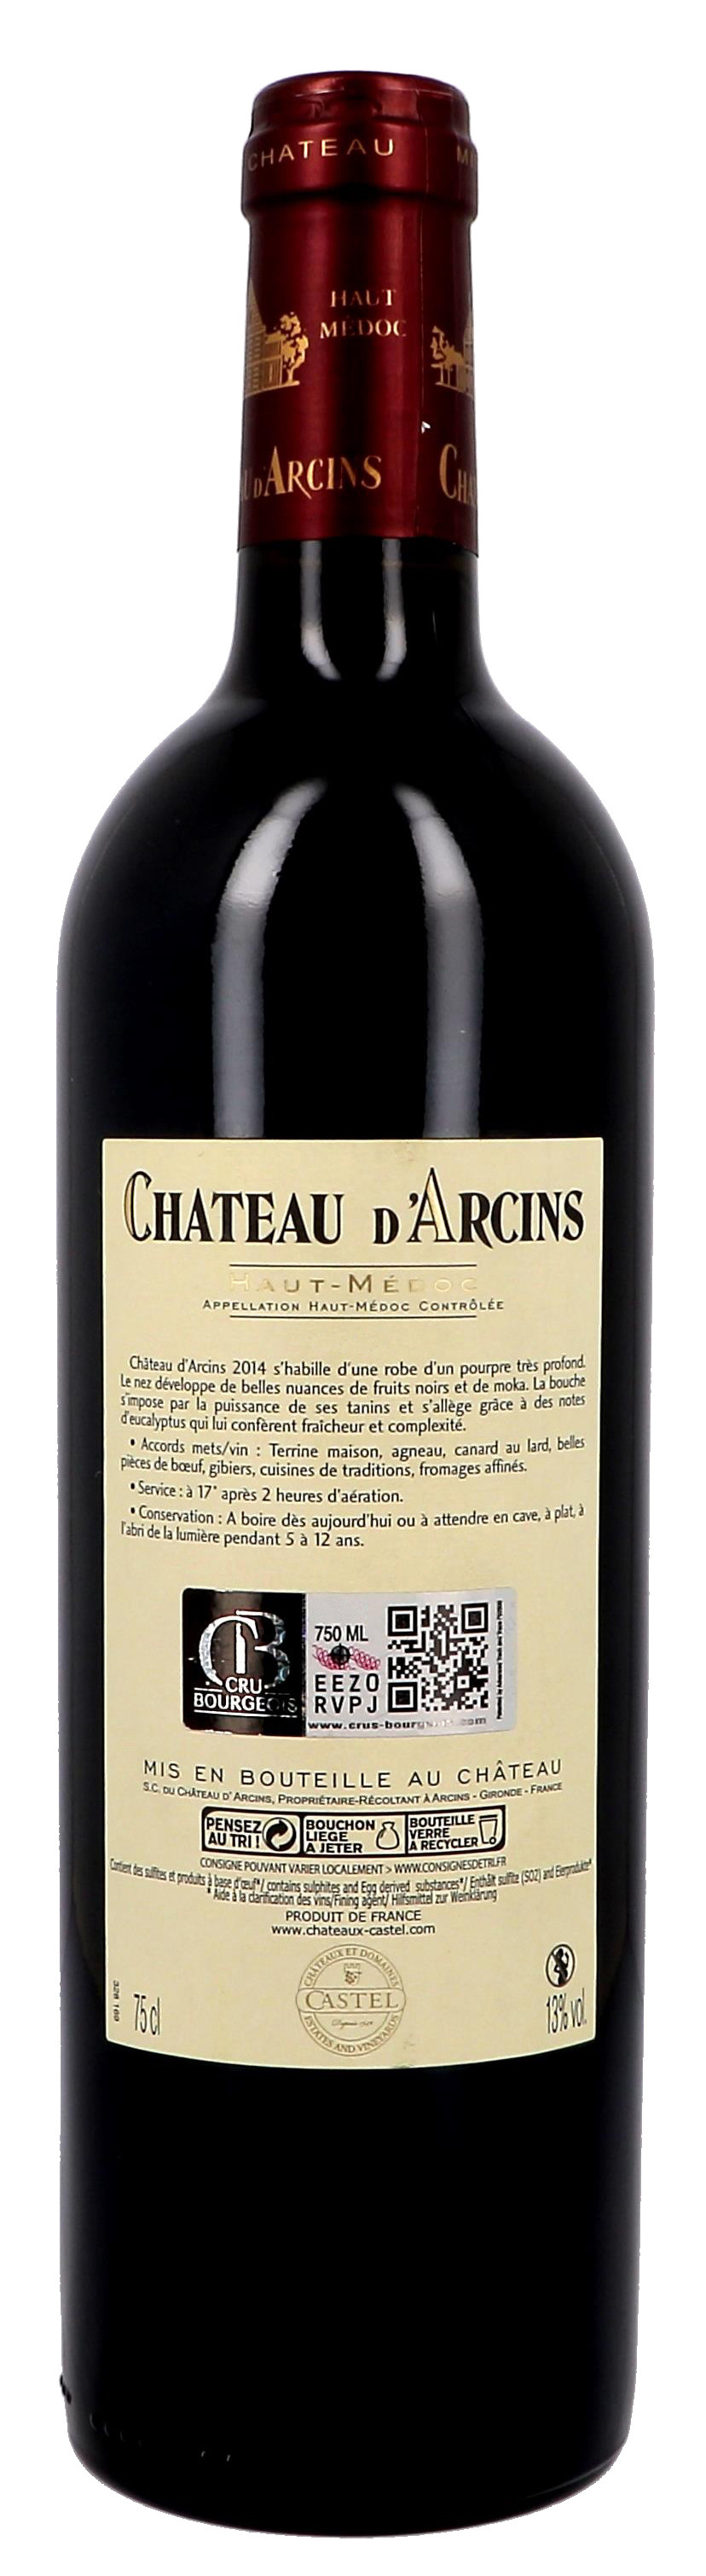 Bordeaux Wine Chateau d'Arcins 75cl 2018 Haut-Medoc Cru Bourgeois - Nevejan